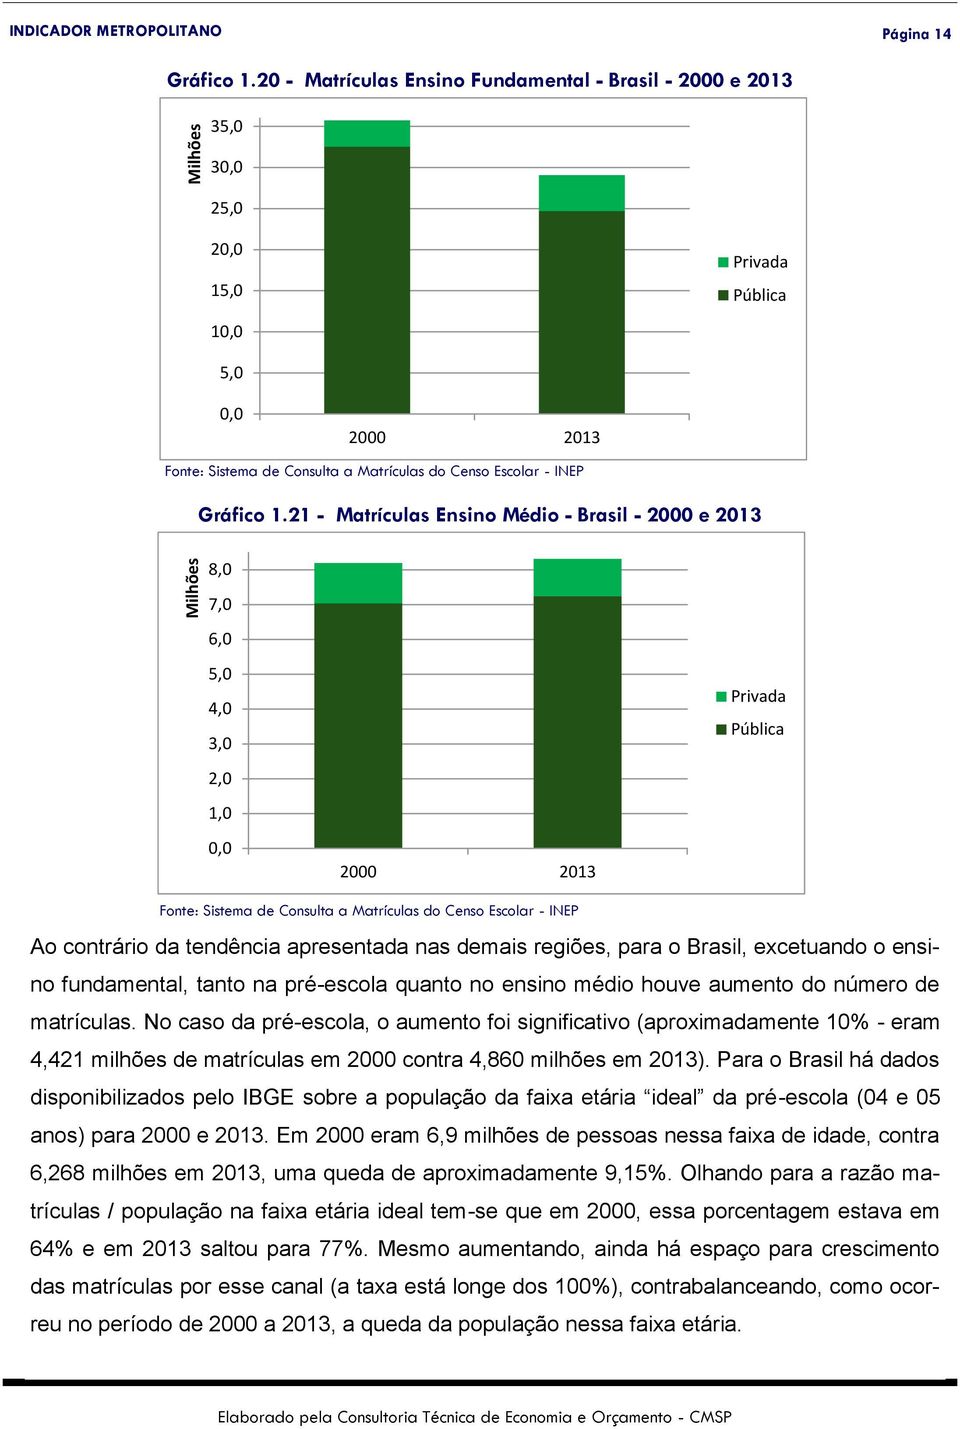 21 - Matrículas Ensino Médio - Brasil - 2000 e 2013 8,0 7,0 6,0 5,0 4,0 3,0 2,0 1,0 0,0 2000 2013 Privada Pública Fonte: Sistema de Consulta a Matrículas do Censo Escolar - INEP Ao contrário da